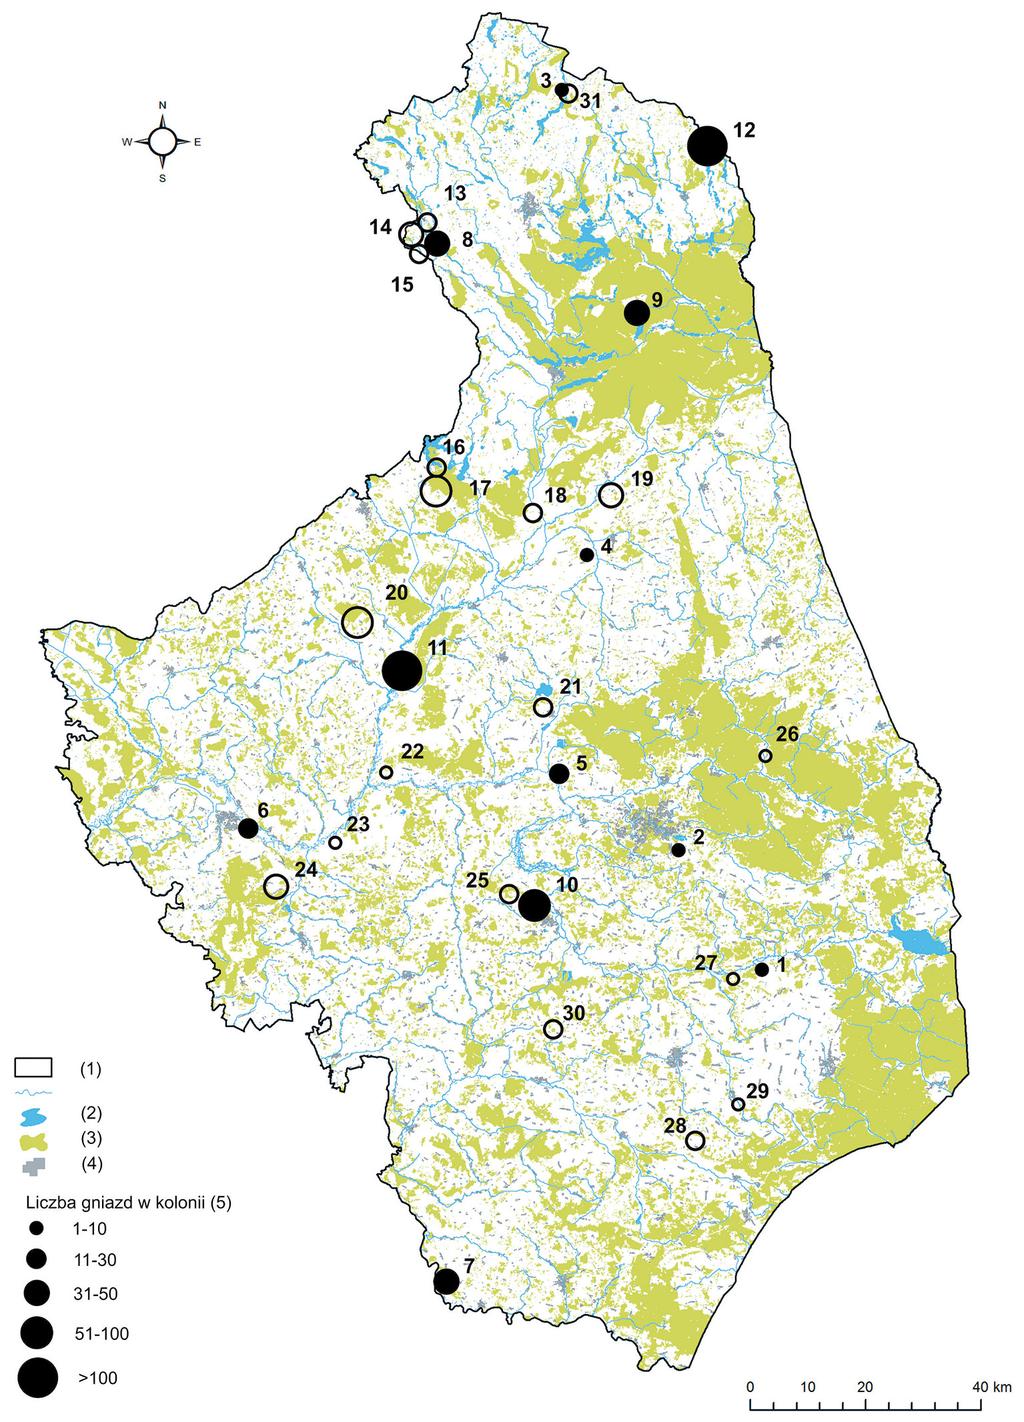 Rys. 1. Rozmieszczenie kolonii czapli siwej w województwie podlaskim w latach 1980 2015. Puste okręgi oznaczają kolonie nieistniejące w roku 2015.